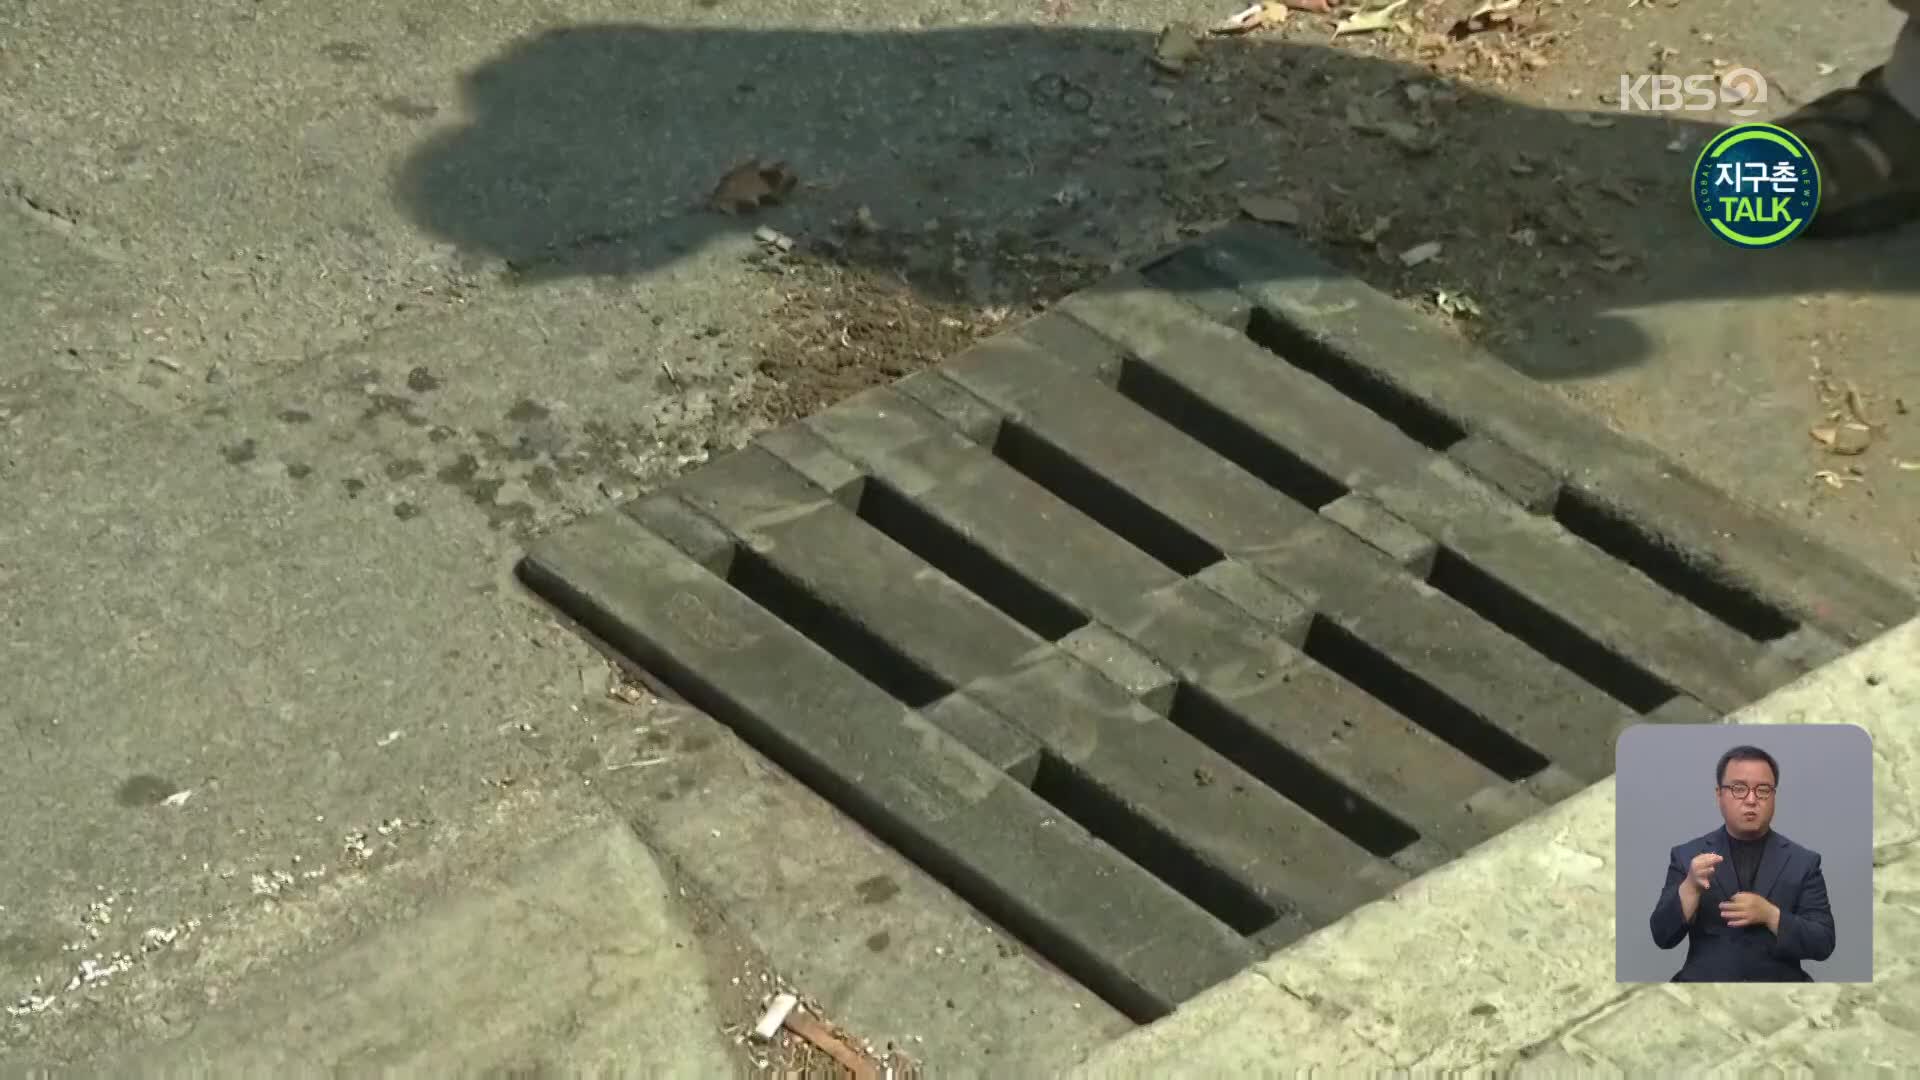 [지구촌 Talk] 맨홀 뚜껑 절도 증가…플라스틱 뚜껑으로 대체